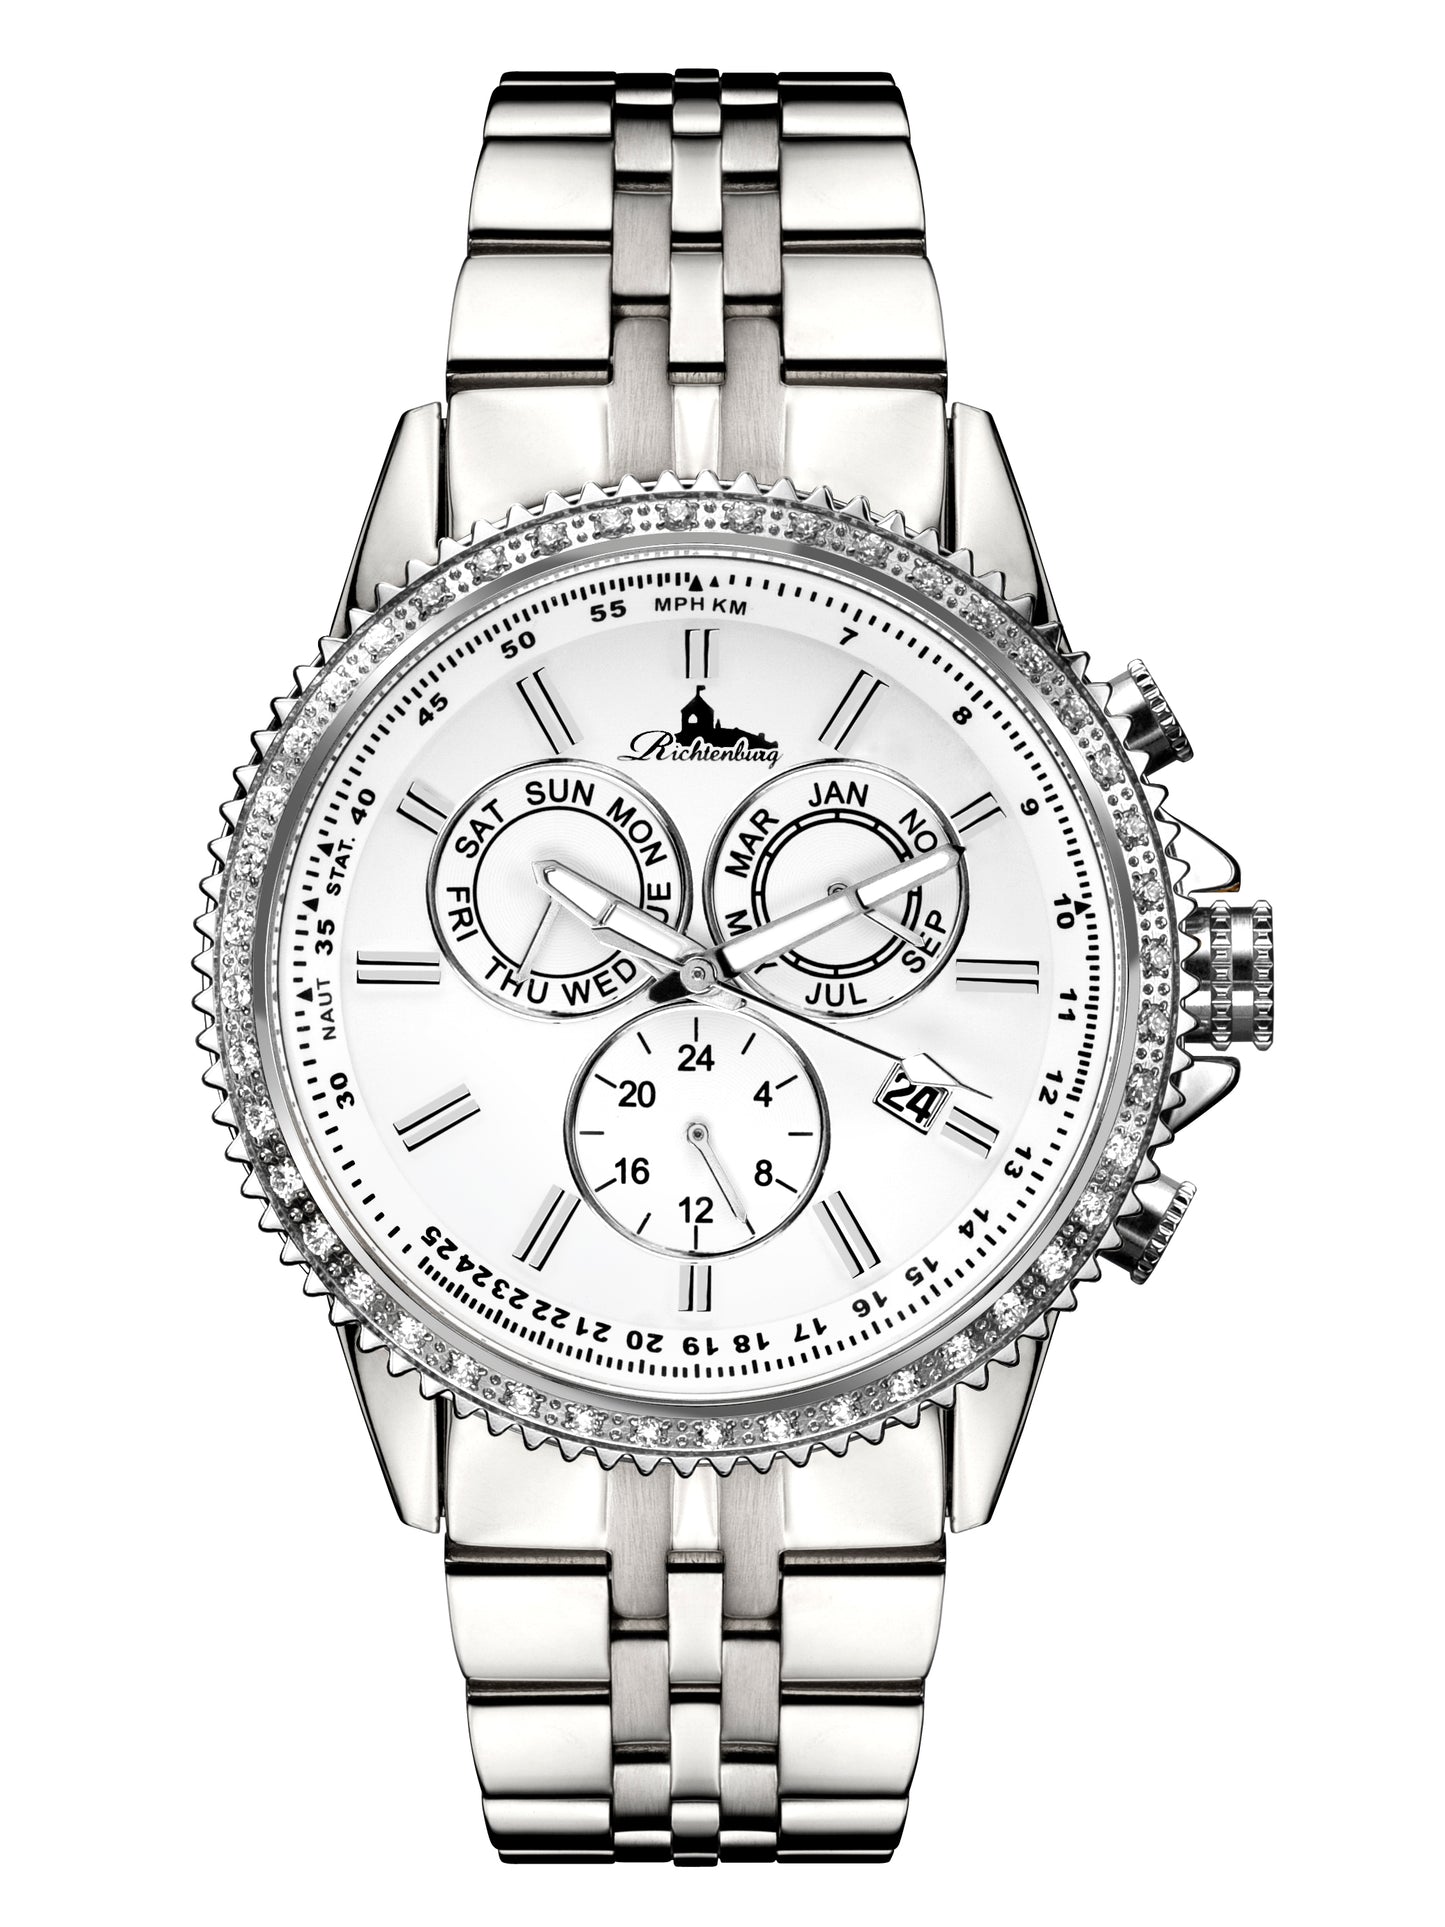 Automatic watches — Cassiopeia — Richtenburg — steel white